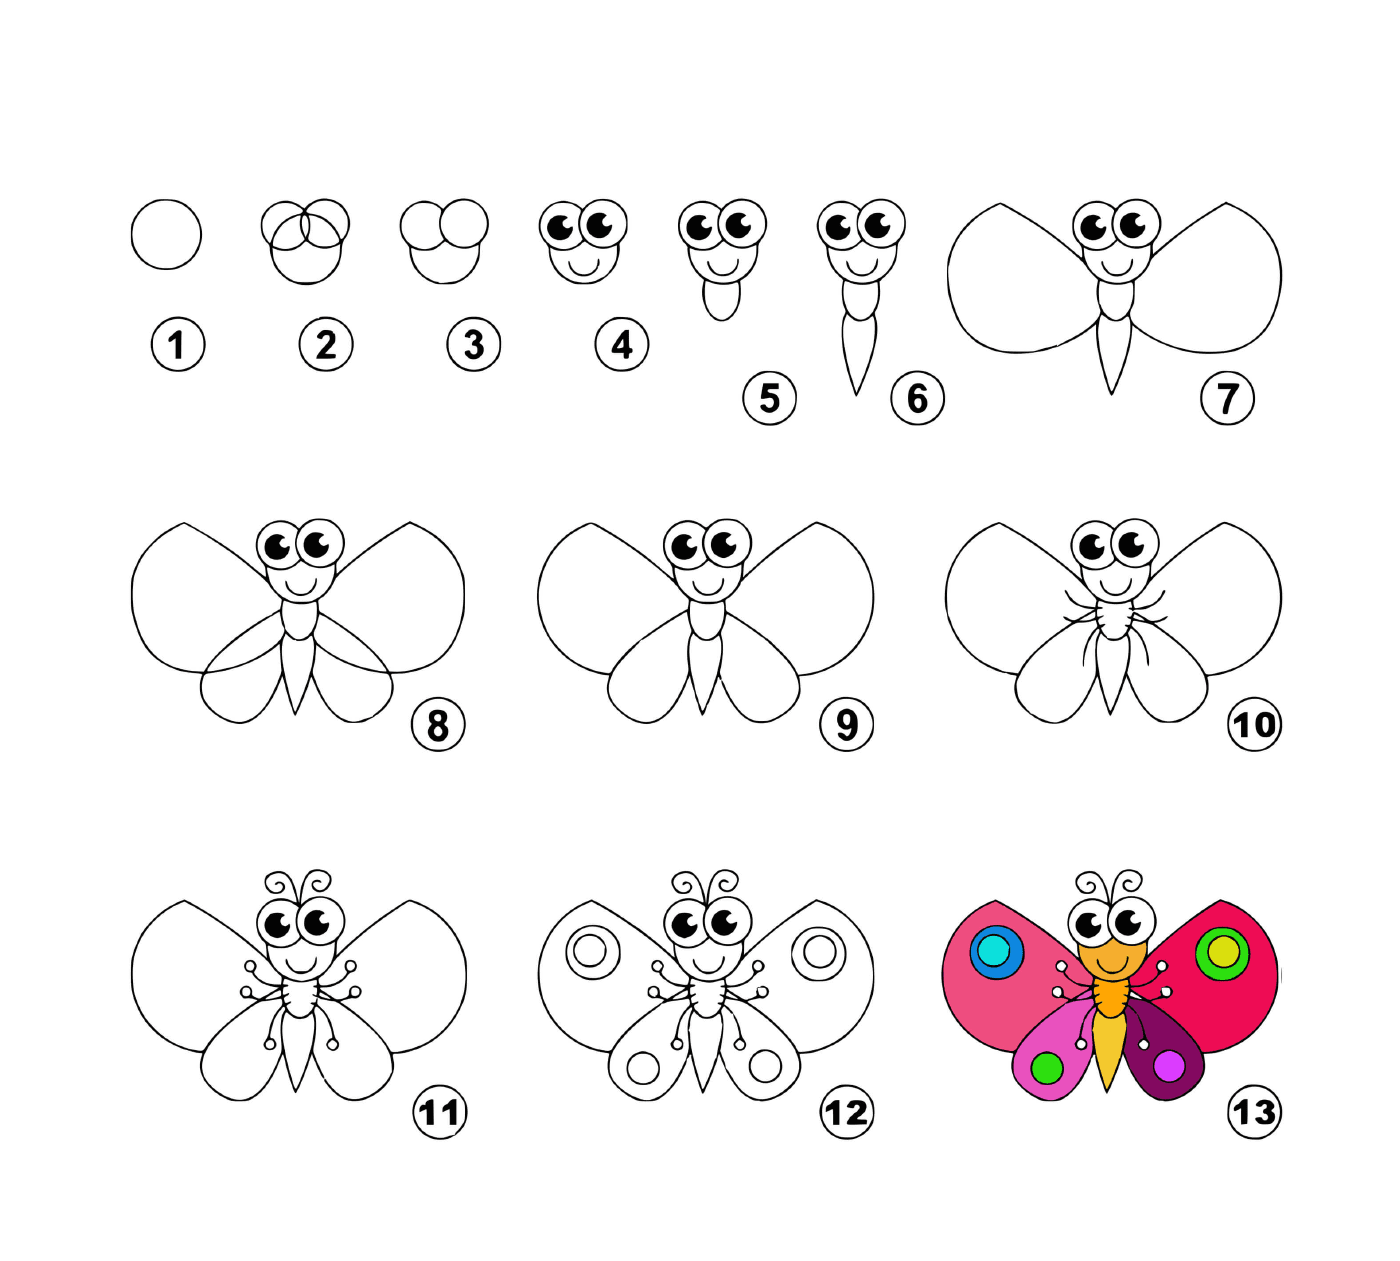  Cómo dibujar una mariposa fácilmente 